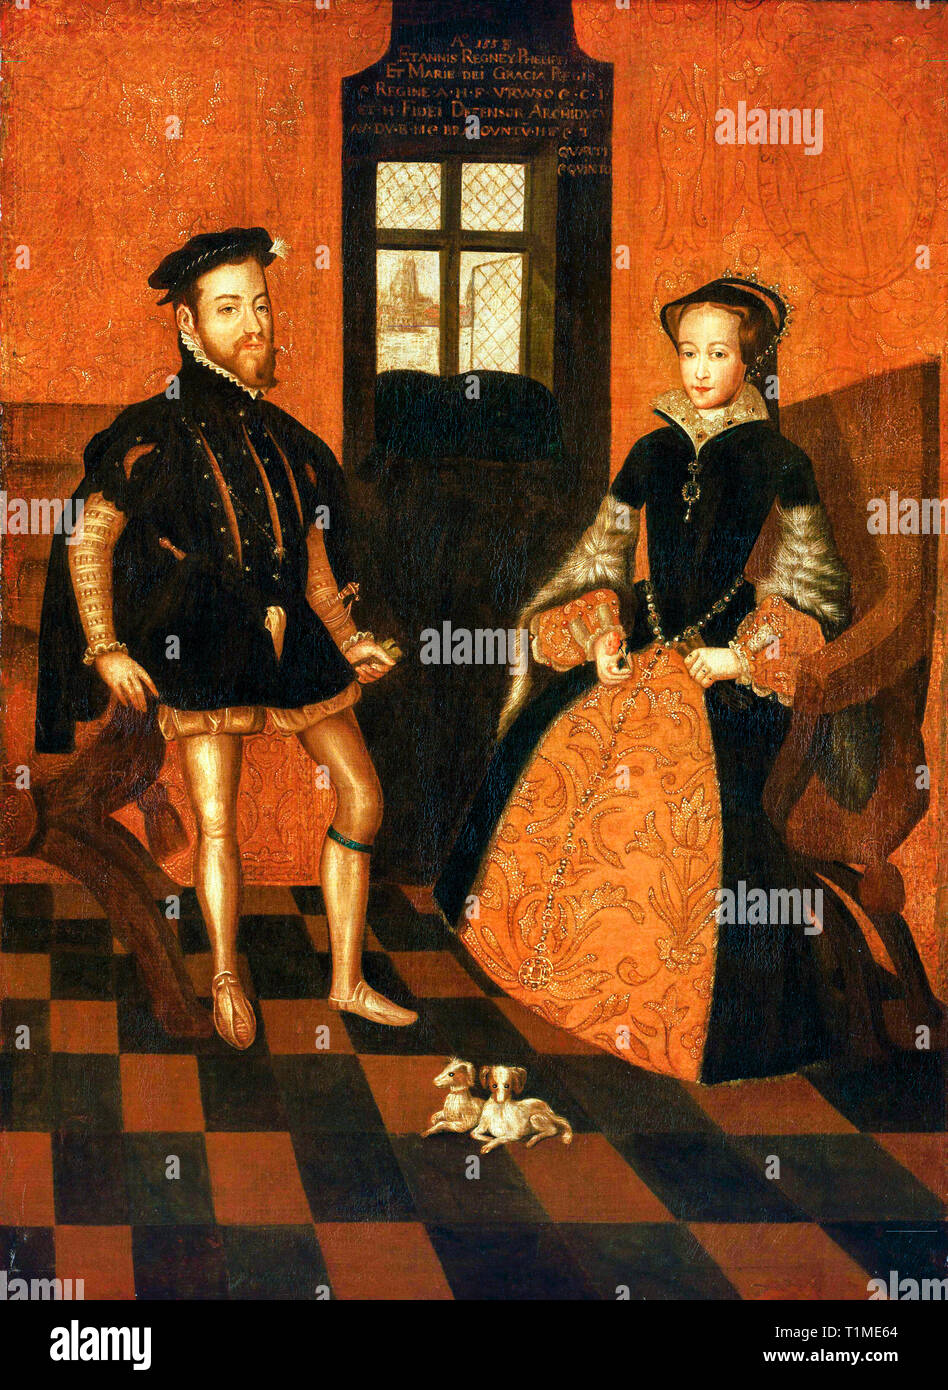 Marie d'Angleterre (1516-1558) et Philippe II d'Espagne (1527-1598), double portrait, British school, après Lucas de Heere, 16e siècle Banque D'Images